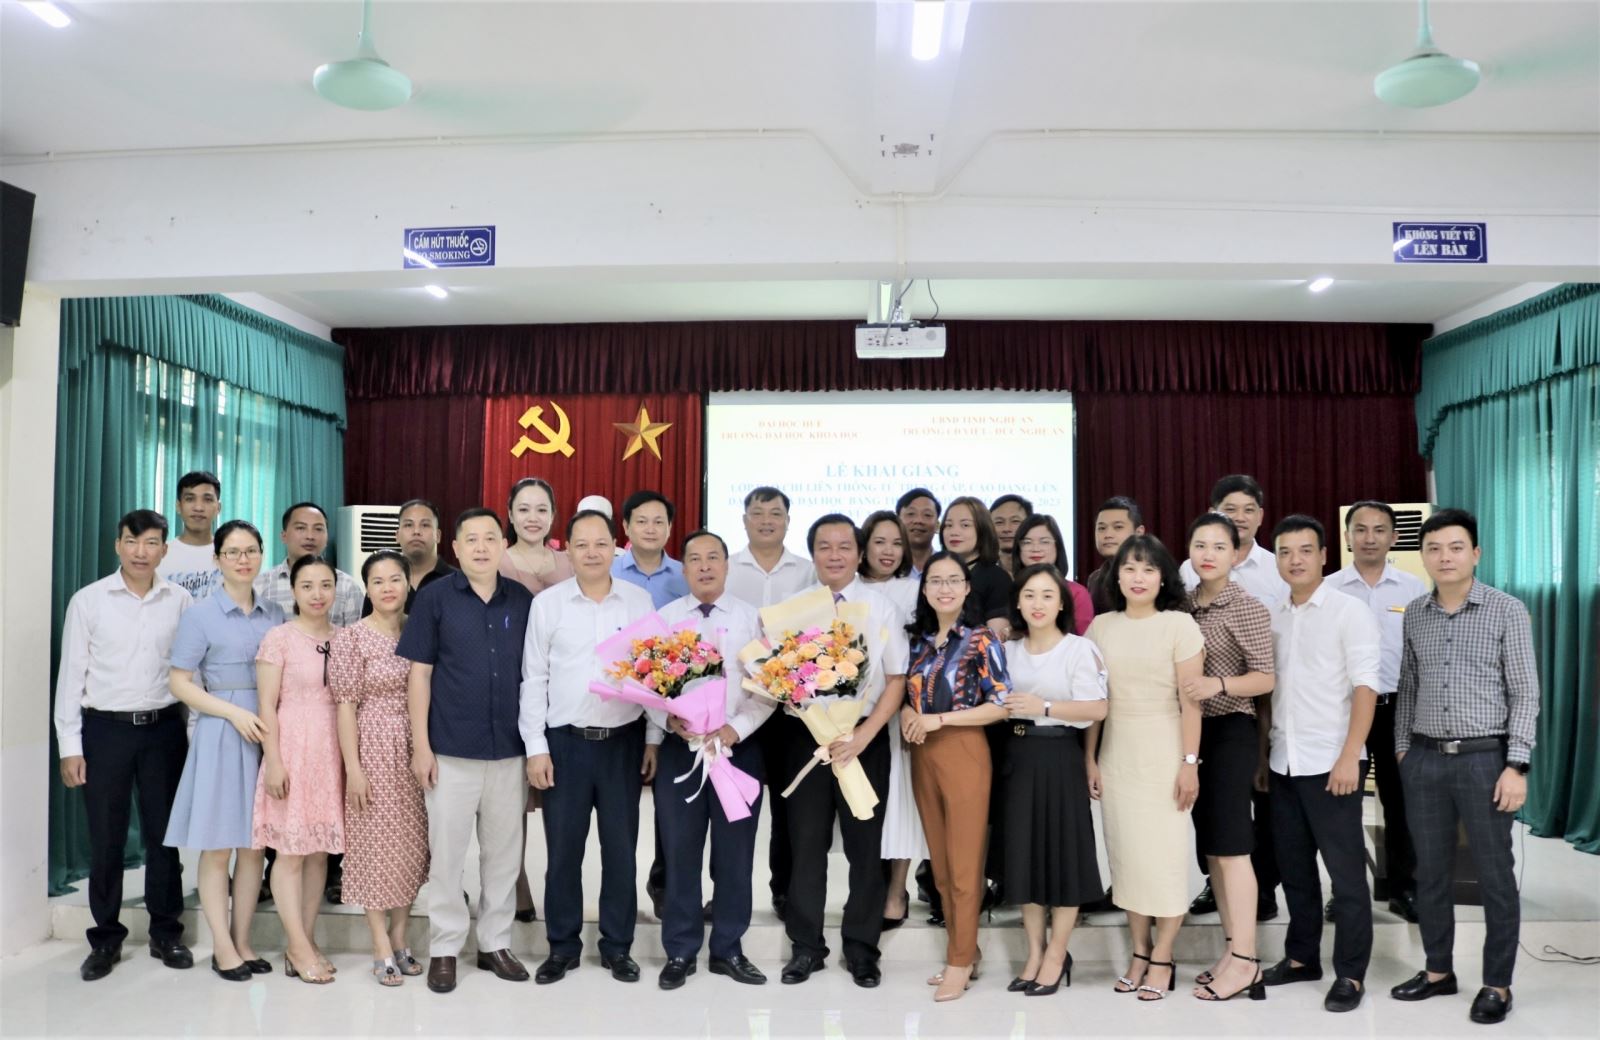  Trường Cao đẳng Việt – Đức Nghệ An phối hợp tổ chức Lễ Khai giảng lớp liên thông từ trung cấp, cao đẳng lên đại học và đại học văn bằng hai, chuyên ngành Báo chí